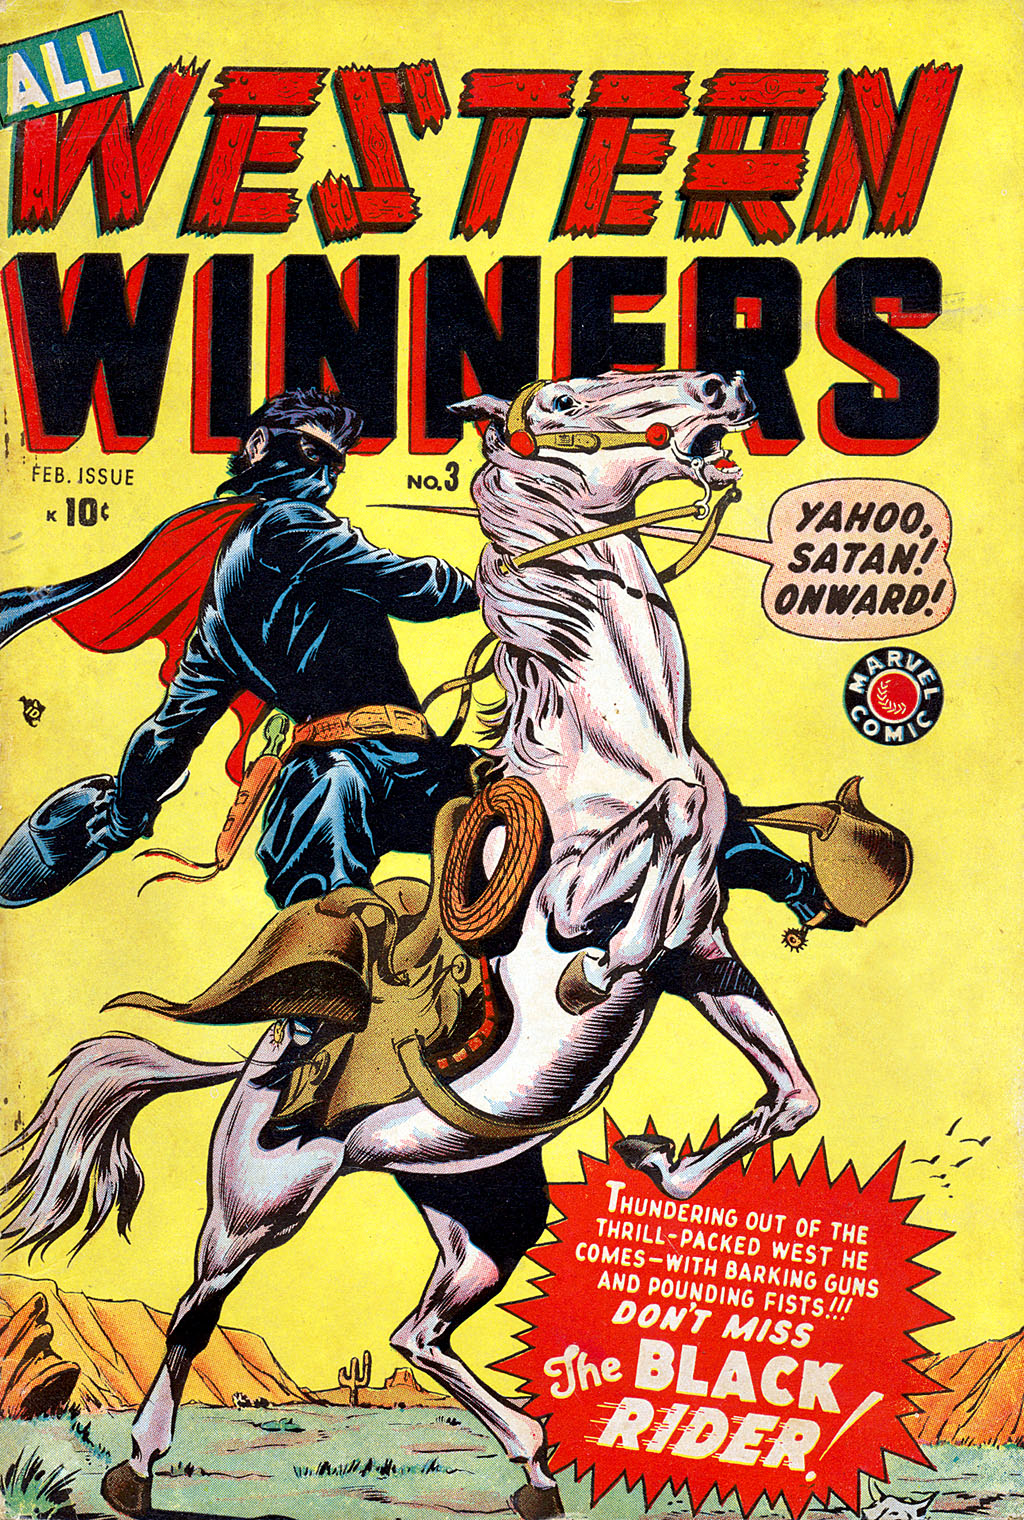 Read online All Western Winners comic -  Issue #3 - 1